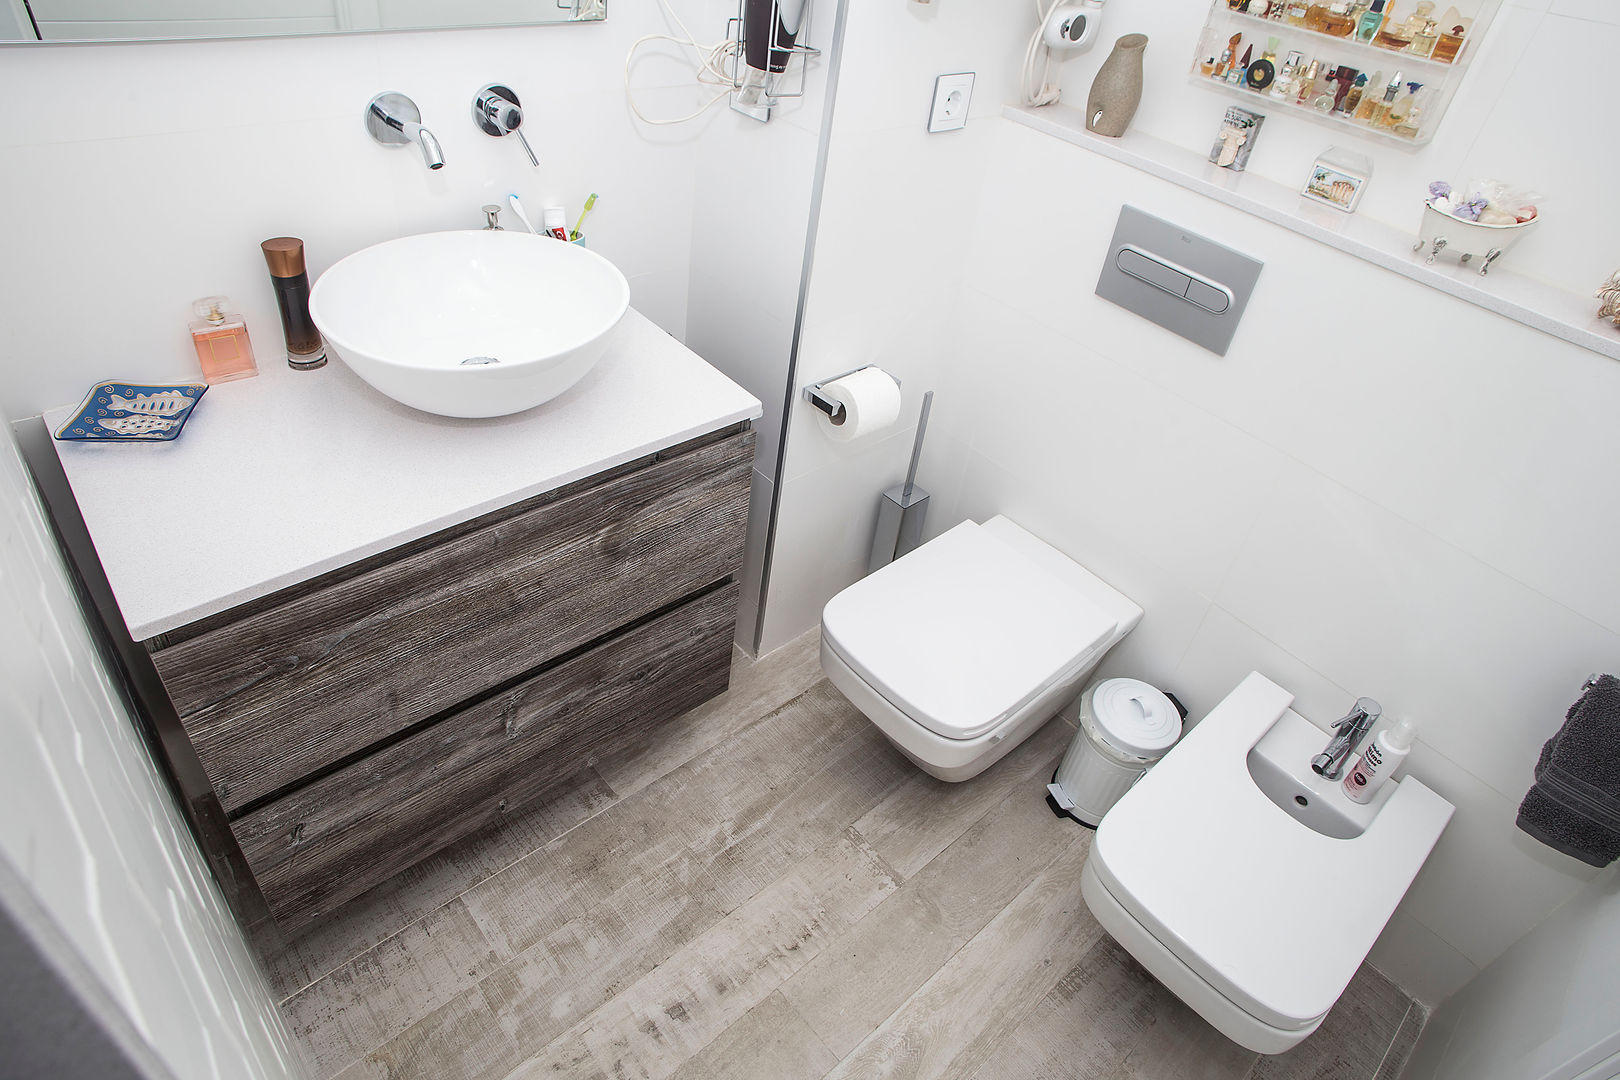 Baño de cortesía Grupo Inventia Baños de estilo moderno Azulejos cuarto de baño,sanitarios,lavabo,almacenaje,disñeo baño